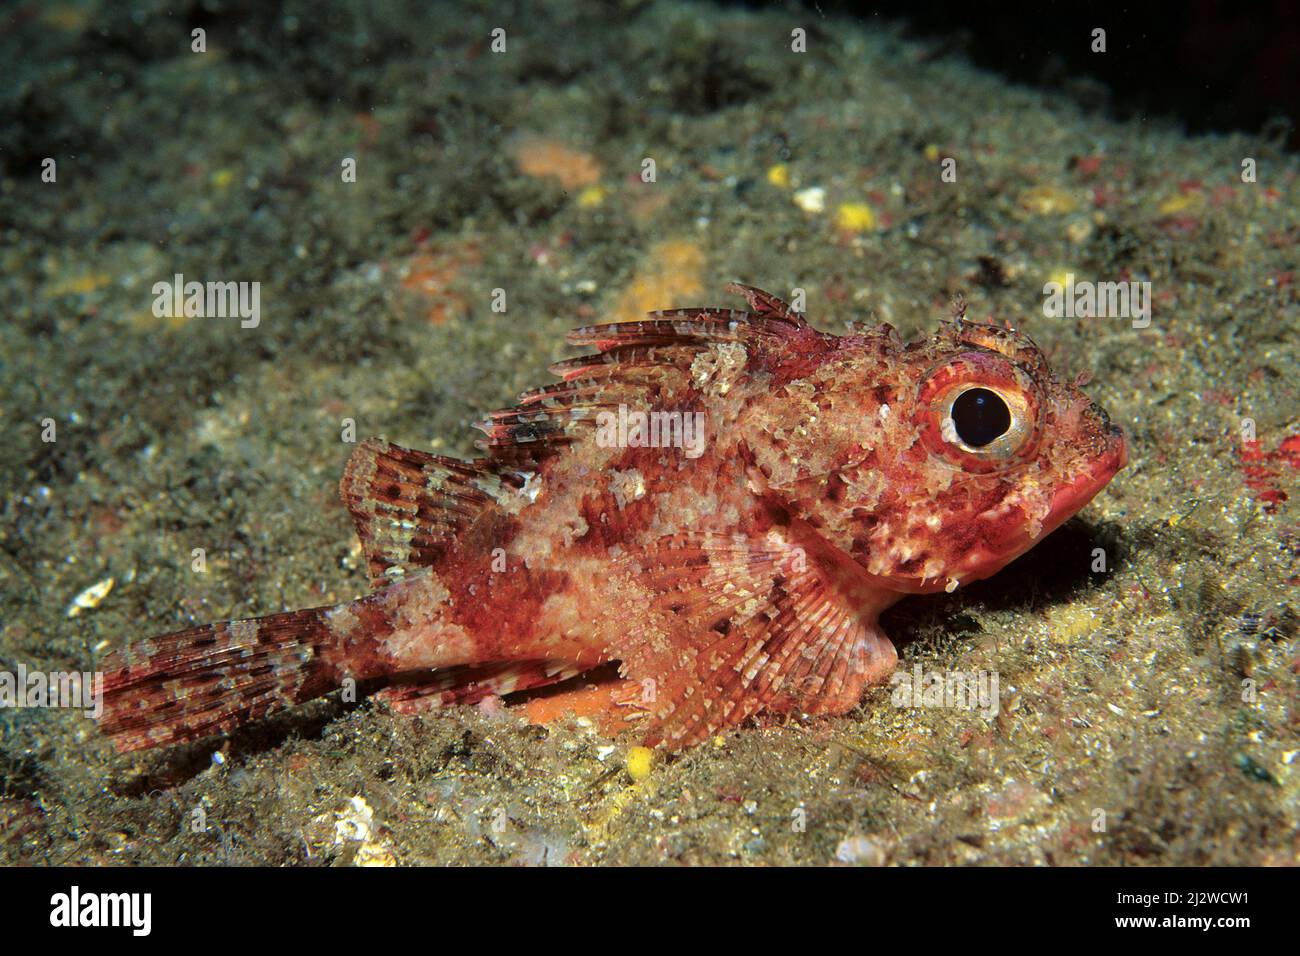 Small Red Scorpionfish (Scorpaena notata), poisonous, Kas, Lykia, Turkey, Mediteranean sea Stock Photo